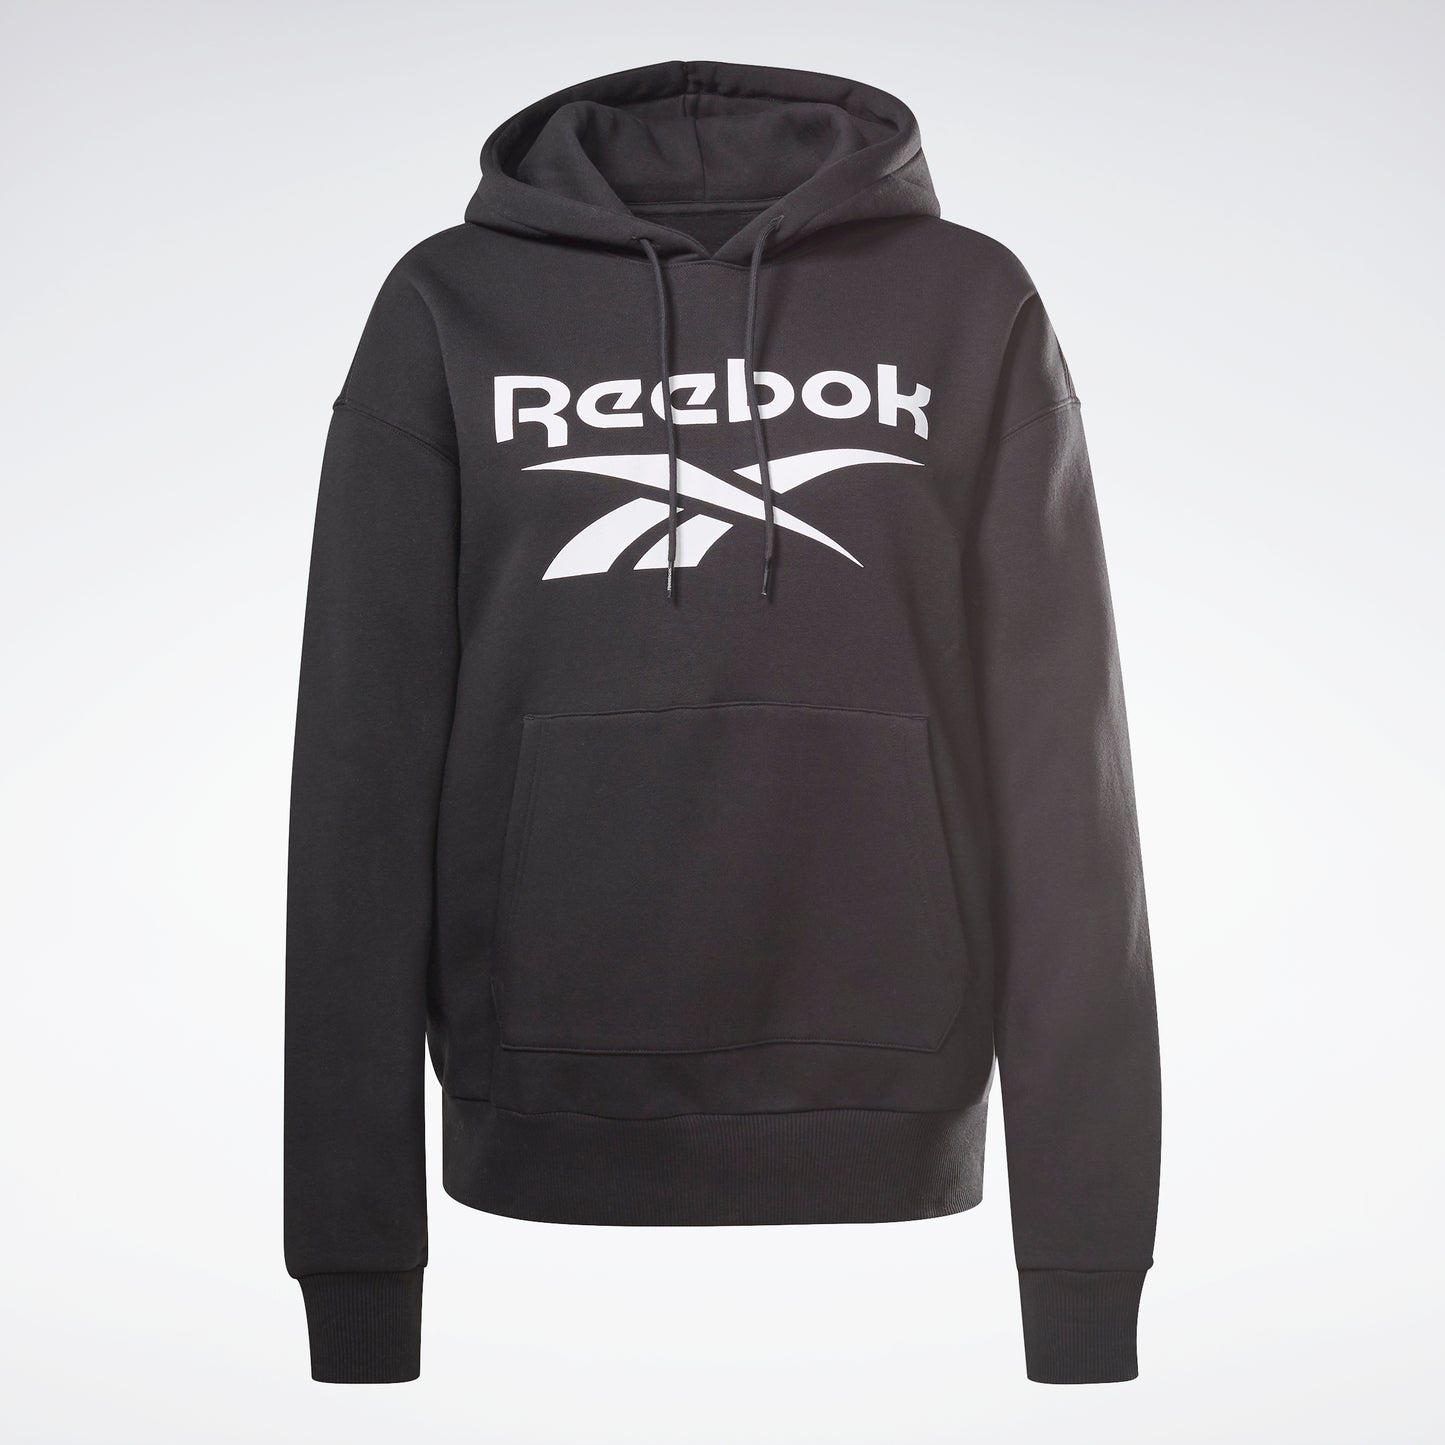 Reebok Apparel Women Reebok Identity Logo Fleece Hoodie Black – Reebok ...